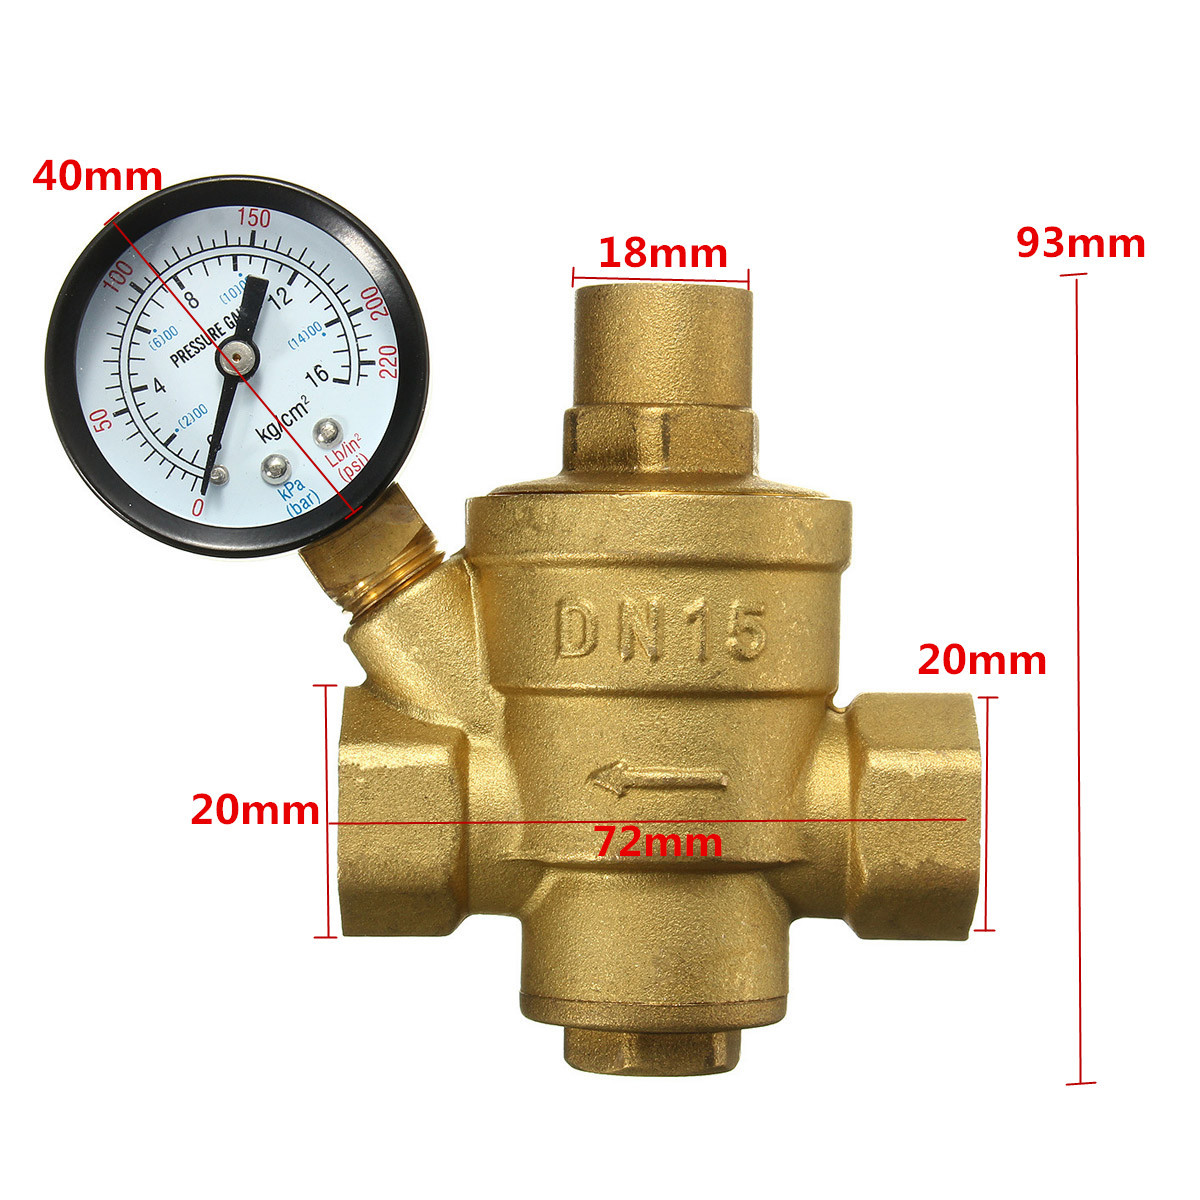 Adjustable-DN15-Bspp-Brass-Water-Pressure-Reducing-Valve-with-Gauge-Flow-1104771-2